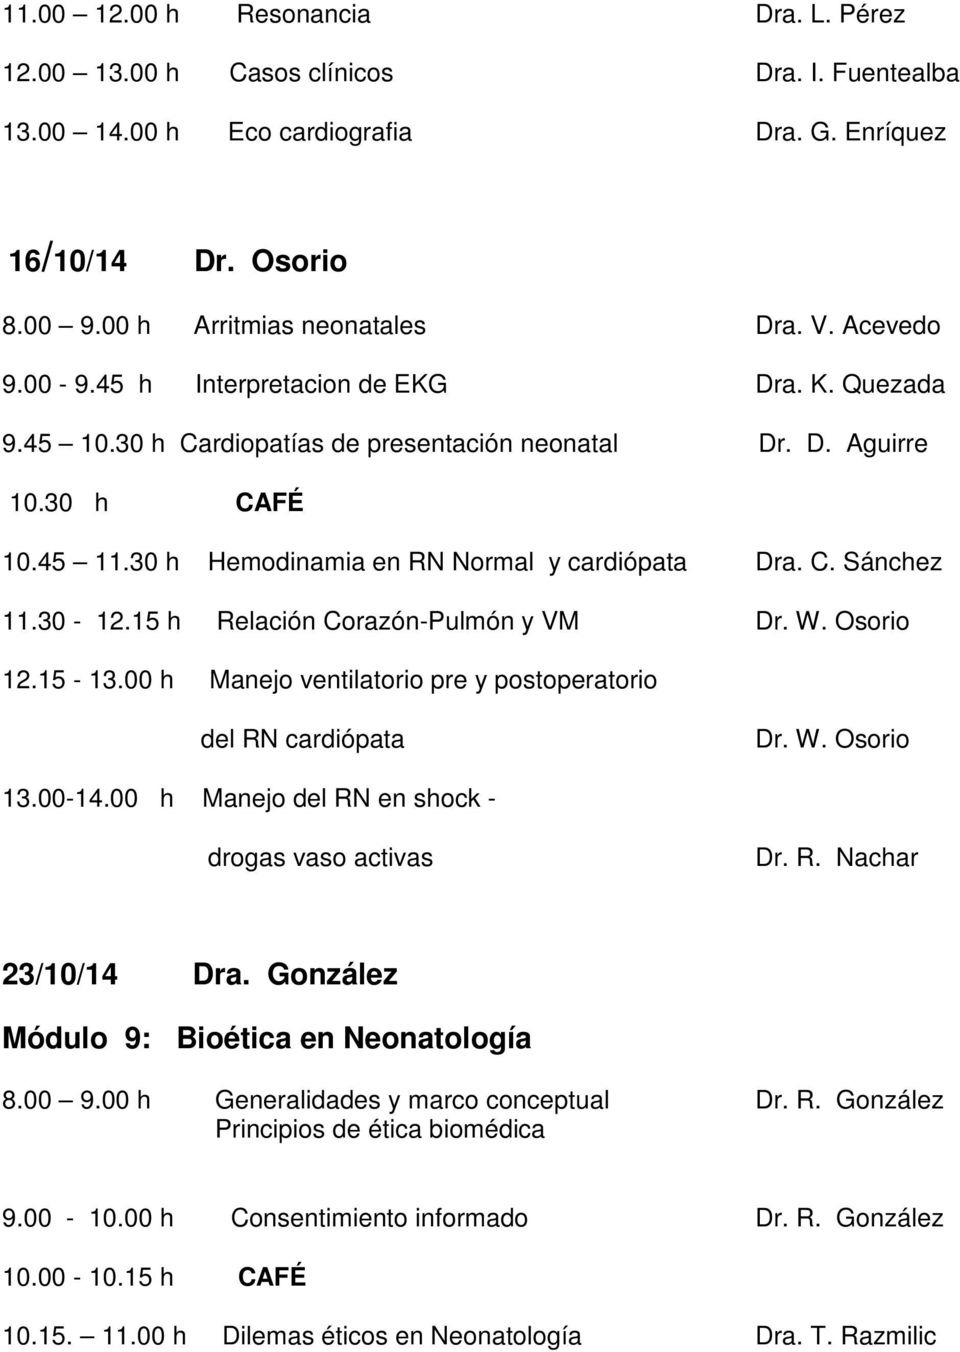 30-12.15 h Relación Corazón-Pulmón y VM Dr. W. Osorio 12.15-13.00 h Manejo ventilatorio pre y postoperatorio del RN cardiópata Dr. W. Osorio 13.00-14.